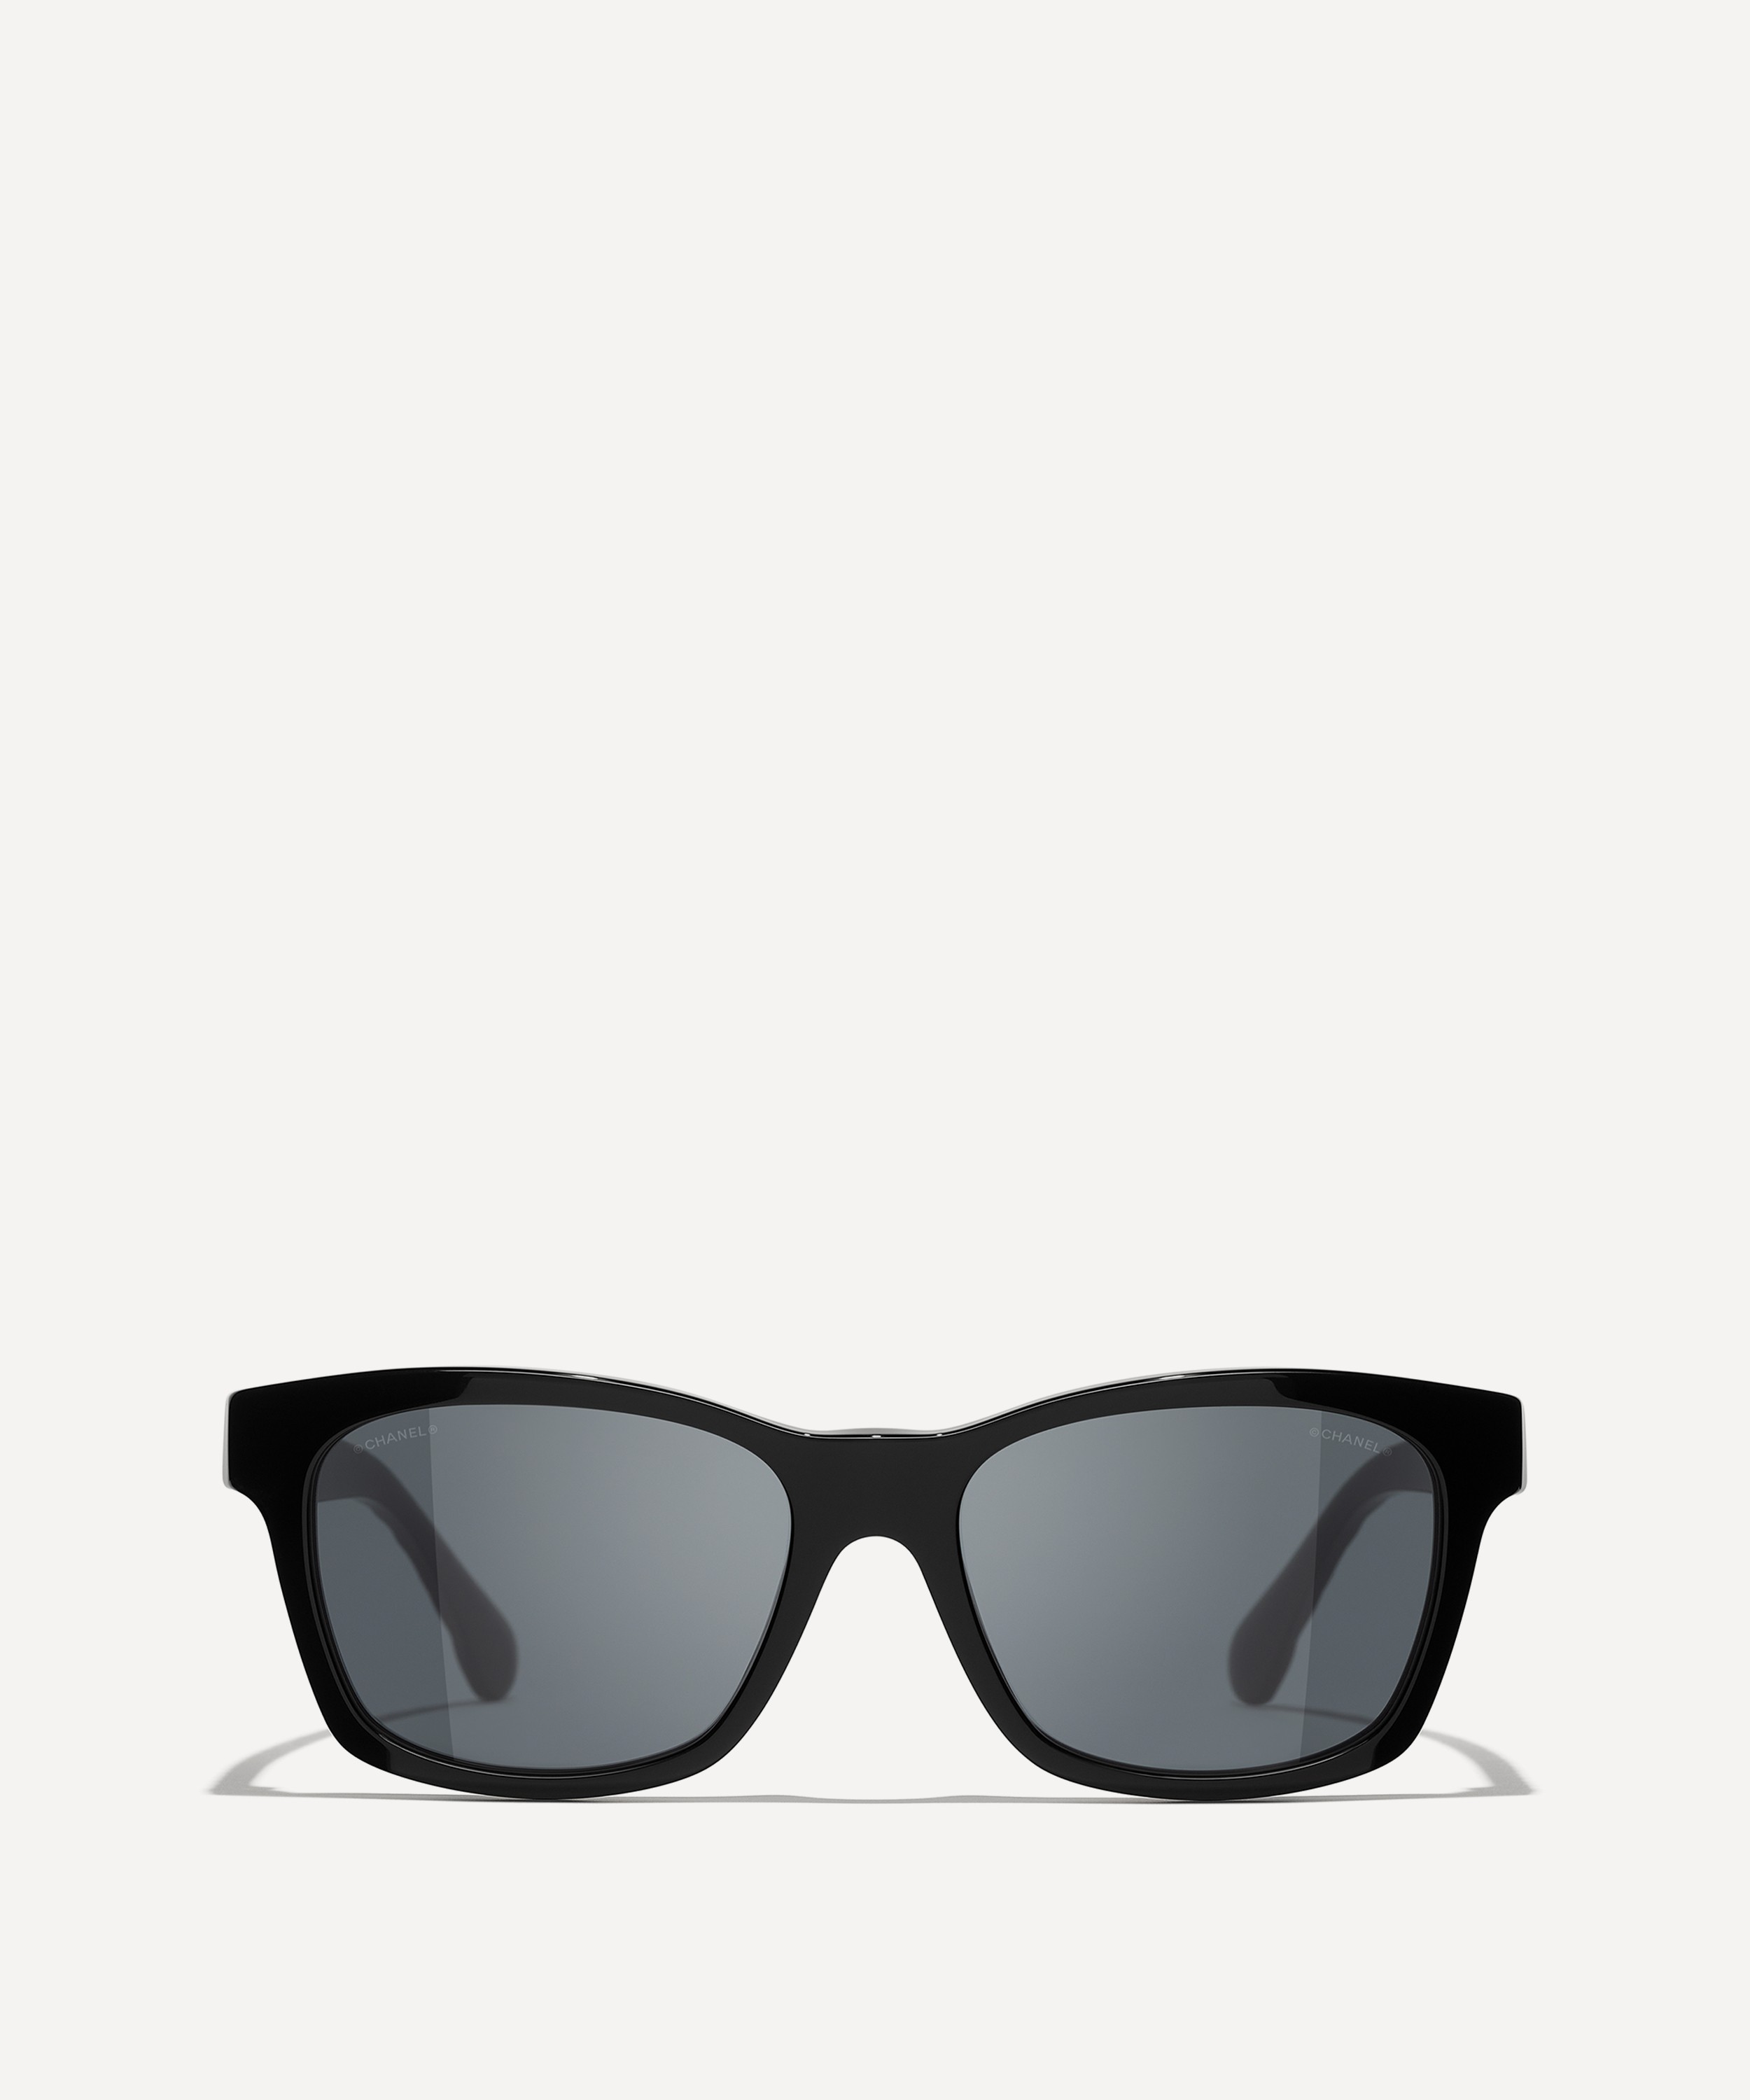 CHANEL - Square Sunglasses